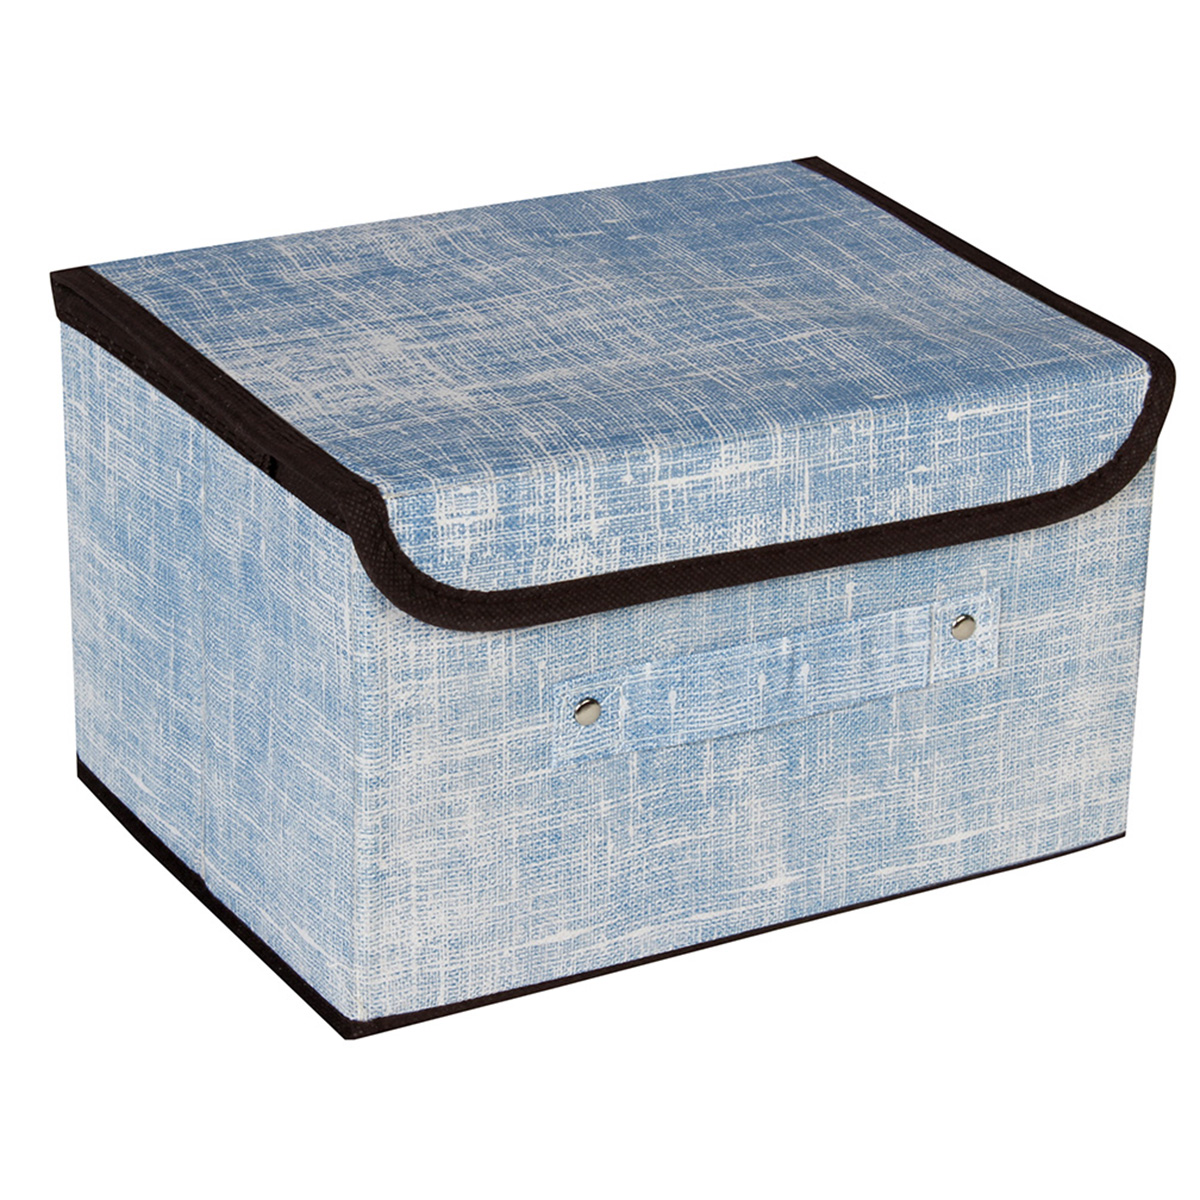 Κουτί αποθήκευσης πτυσσόμενο 26Χ20Χ15 εκ. μπλε - KESKOR 57947-1